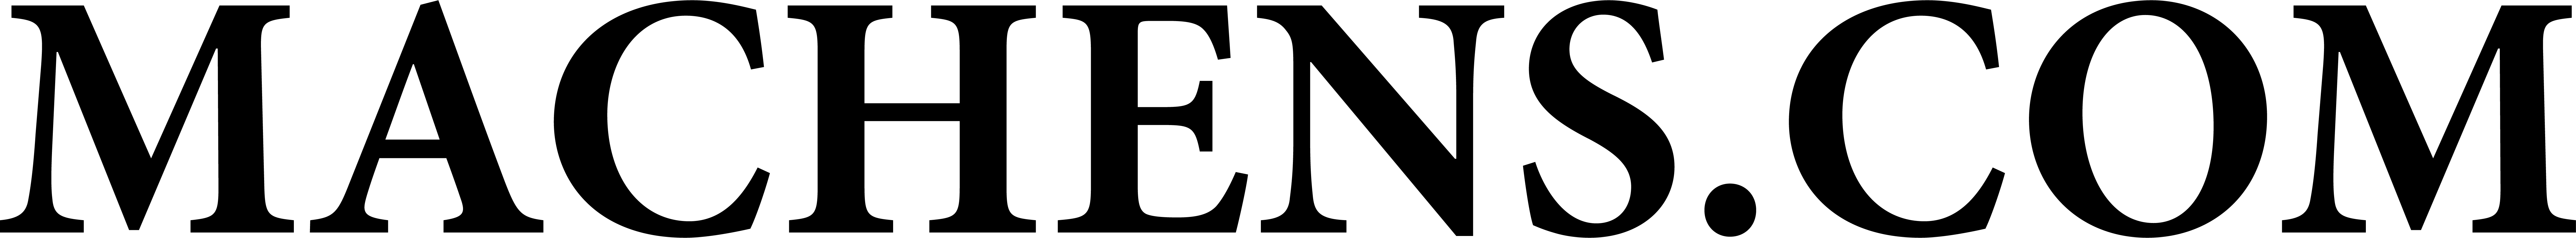 Machens logo